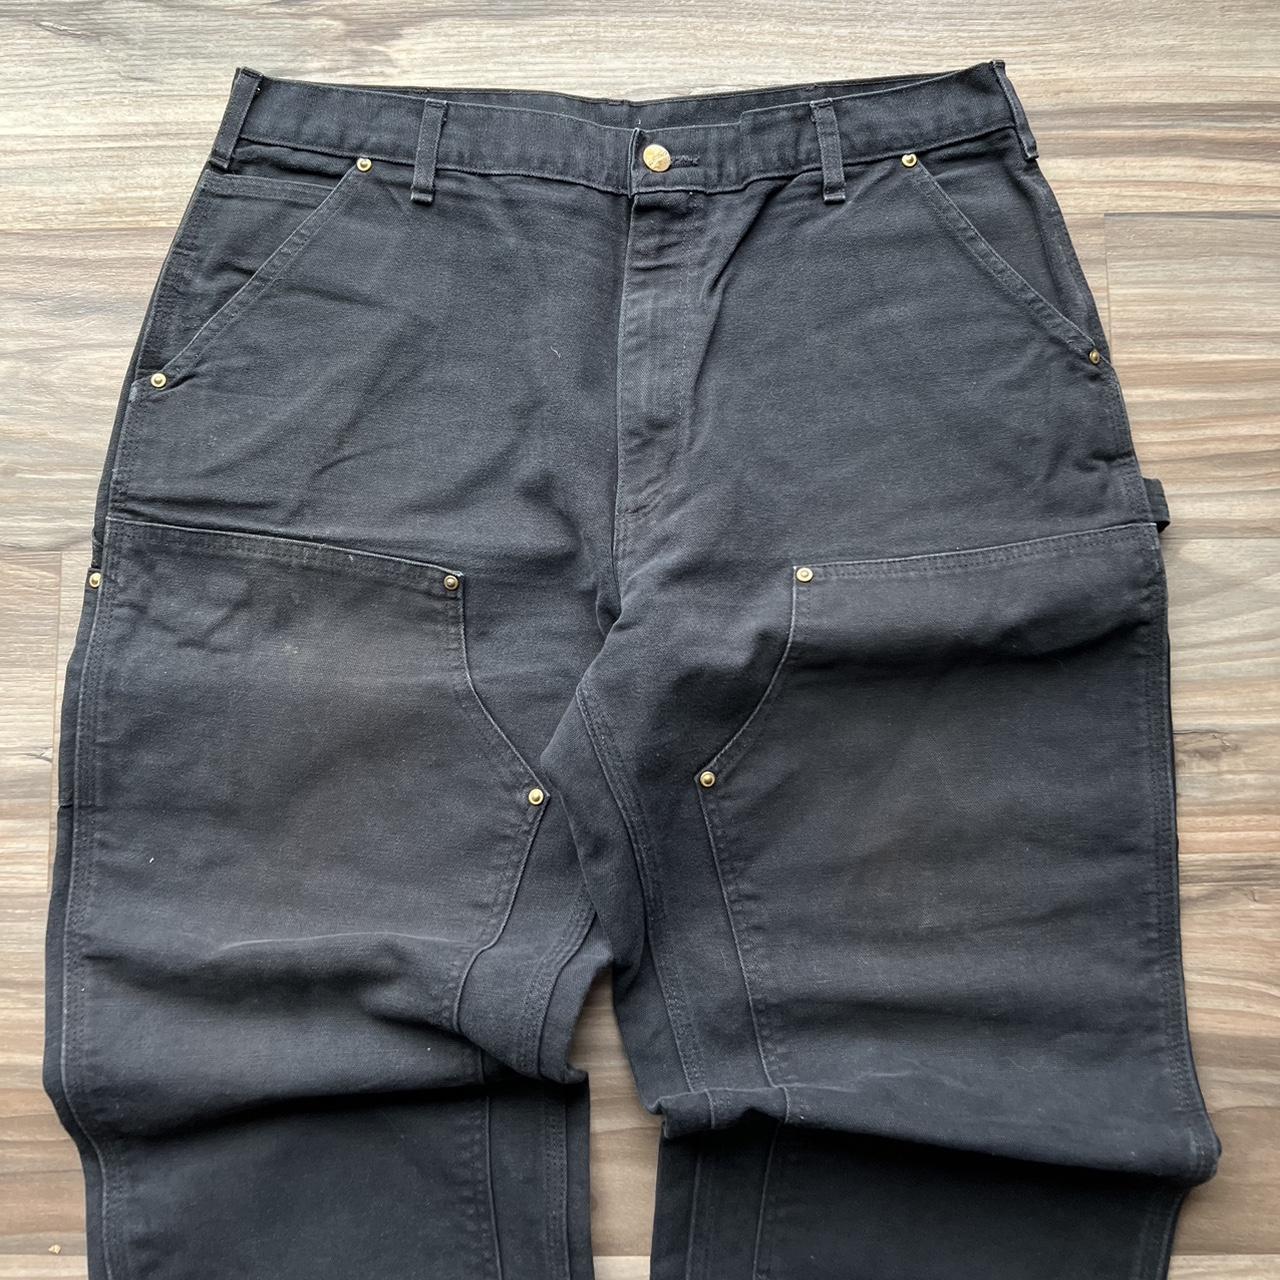 Vintage Carhartt Black Double Knee Pants 38x30... - Depop